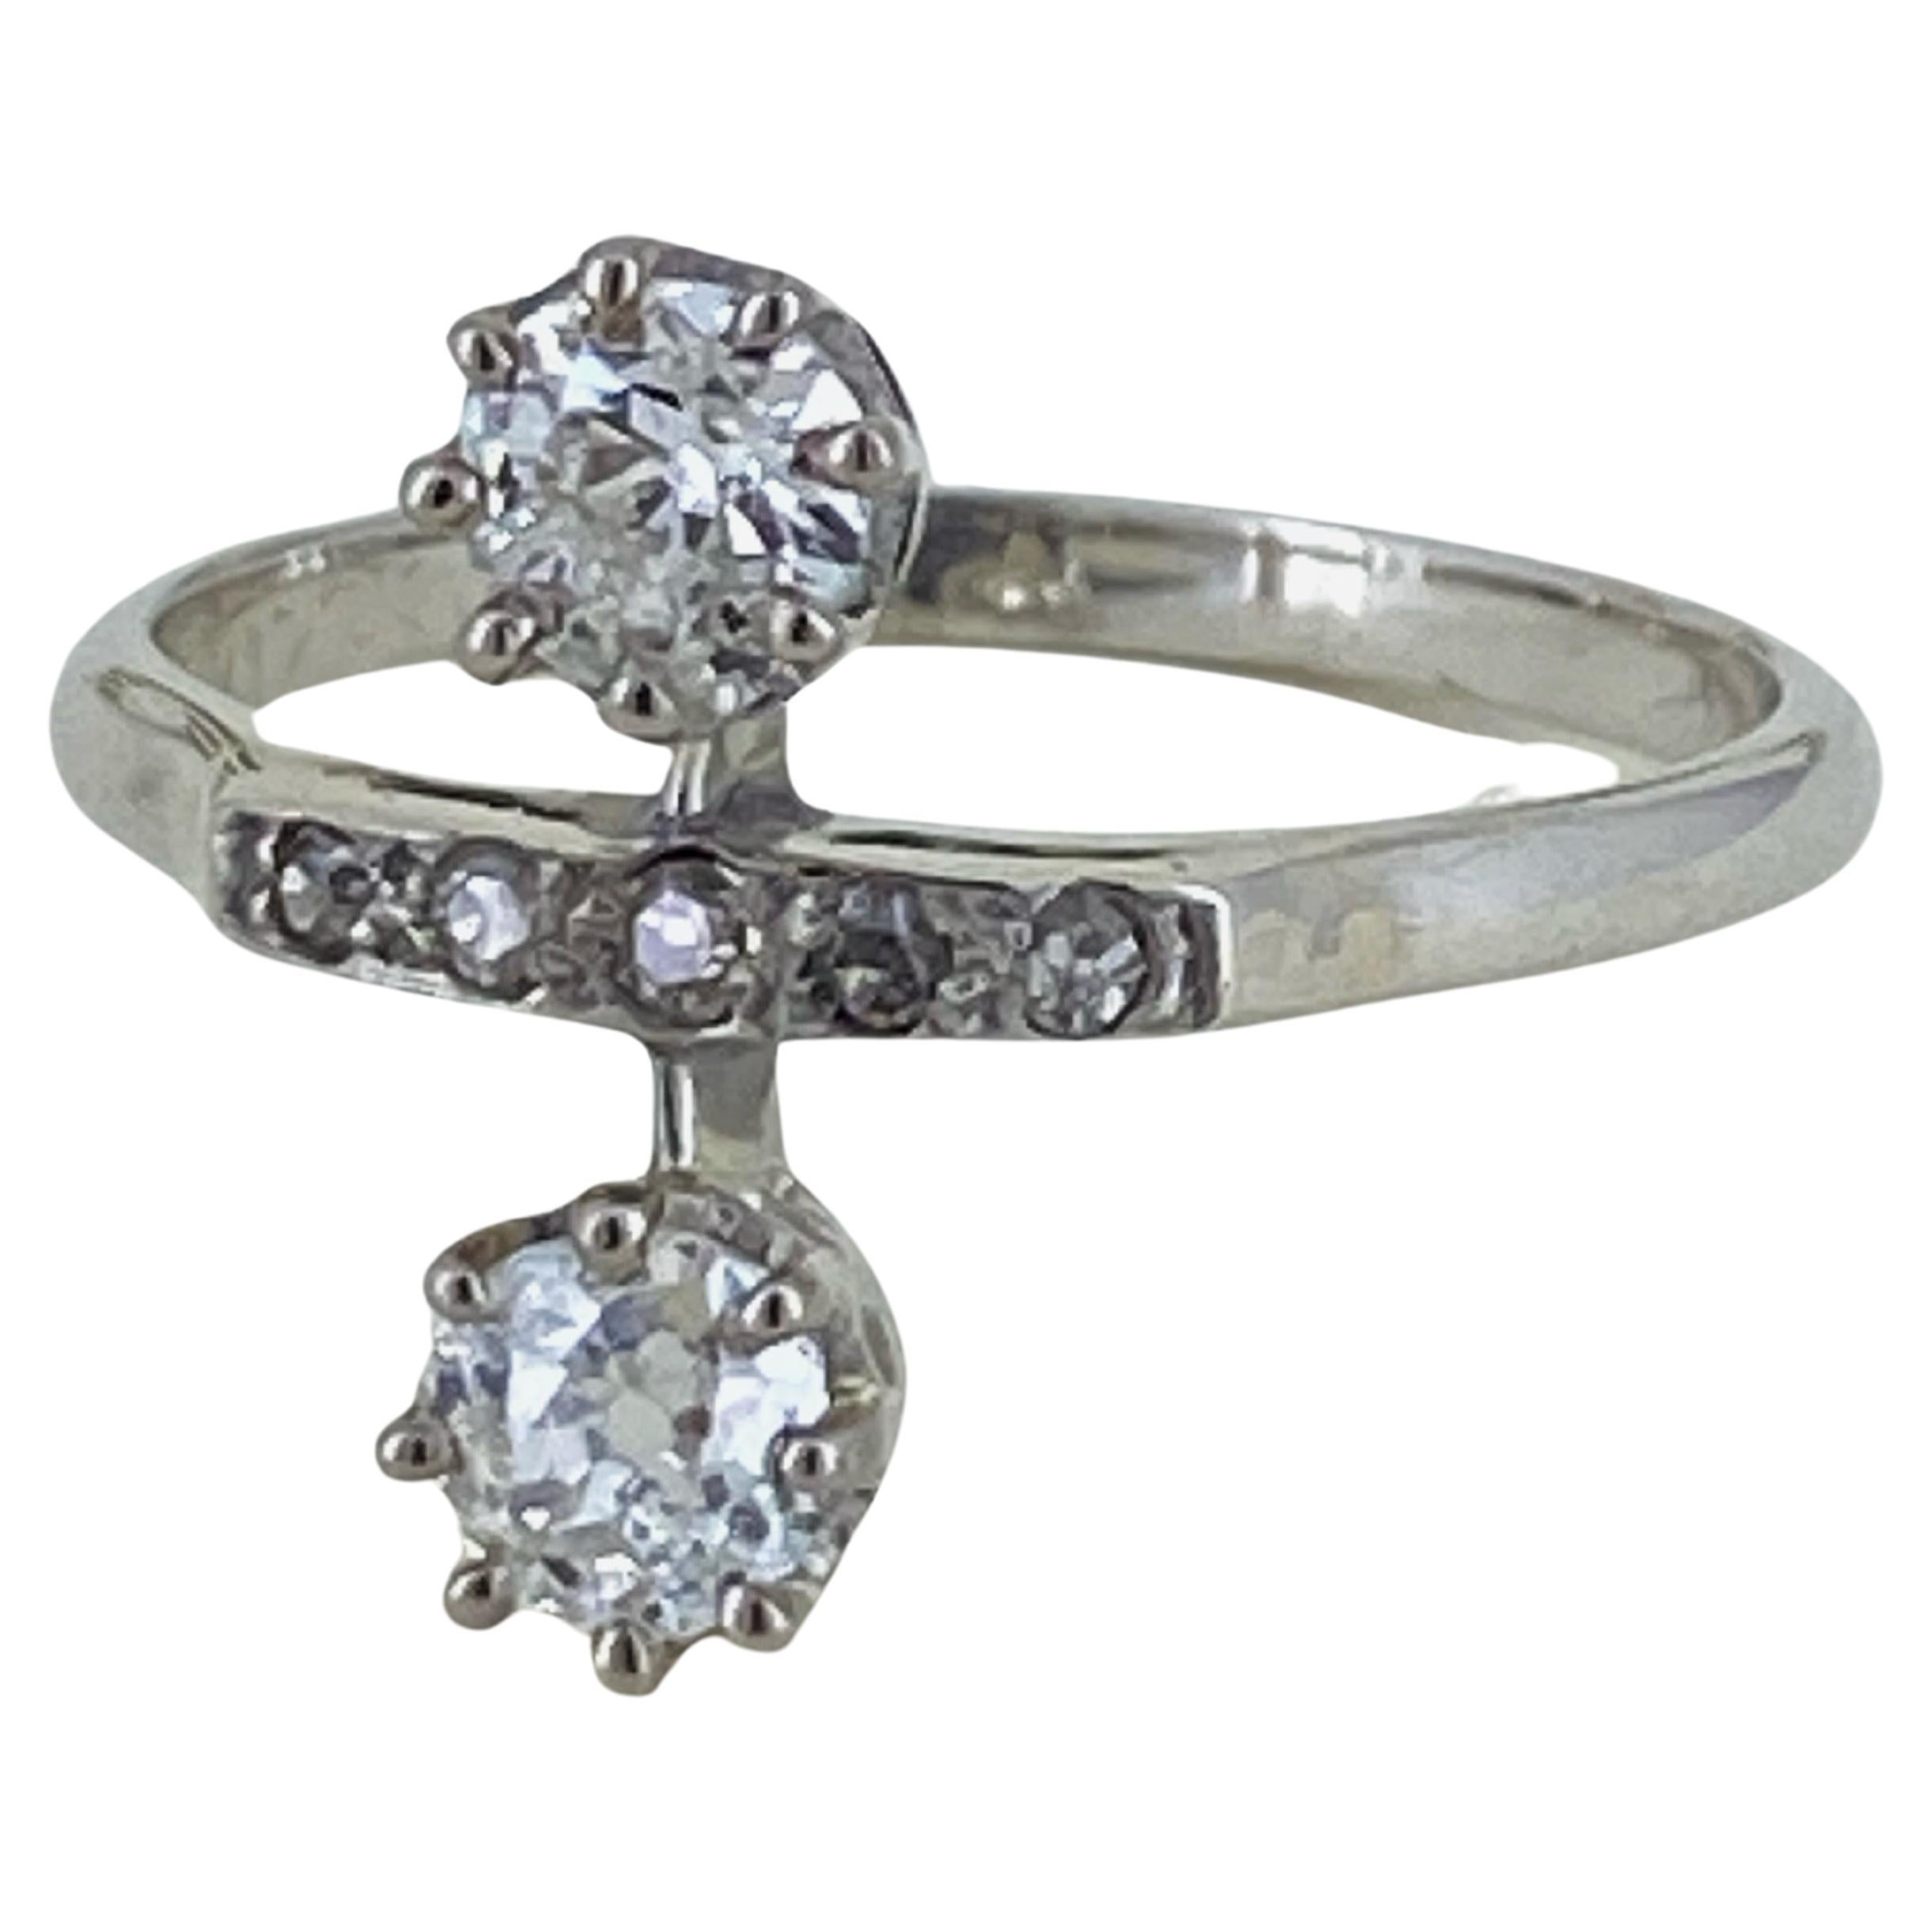 Superb Art-Deco 2-Stone 1.20ct Old-European Cut Diamond Ring in 18K & Platinum